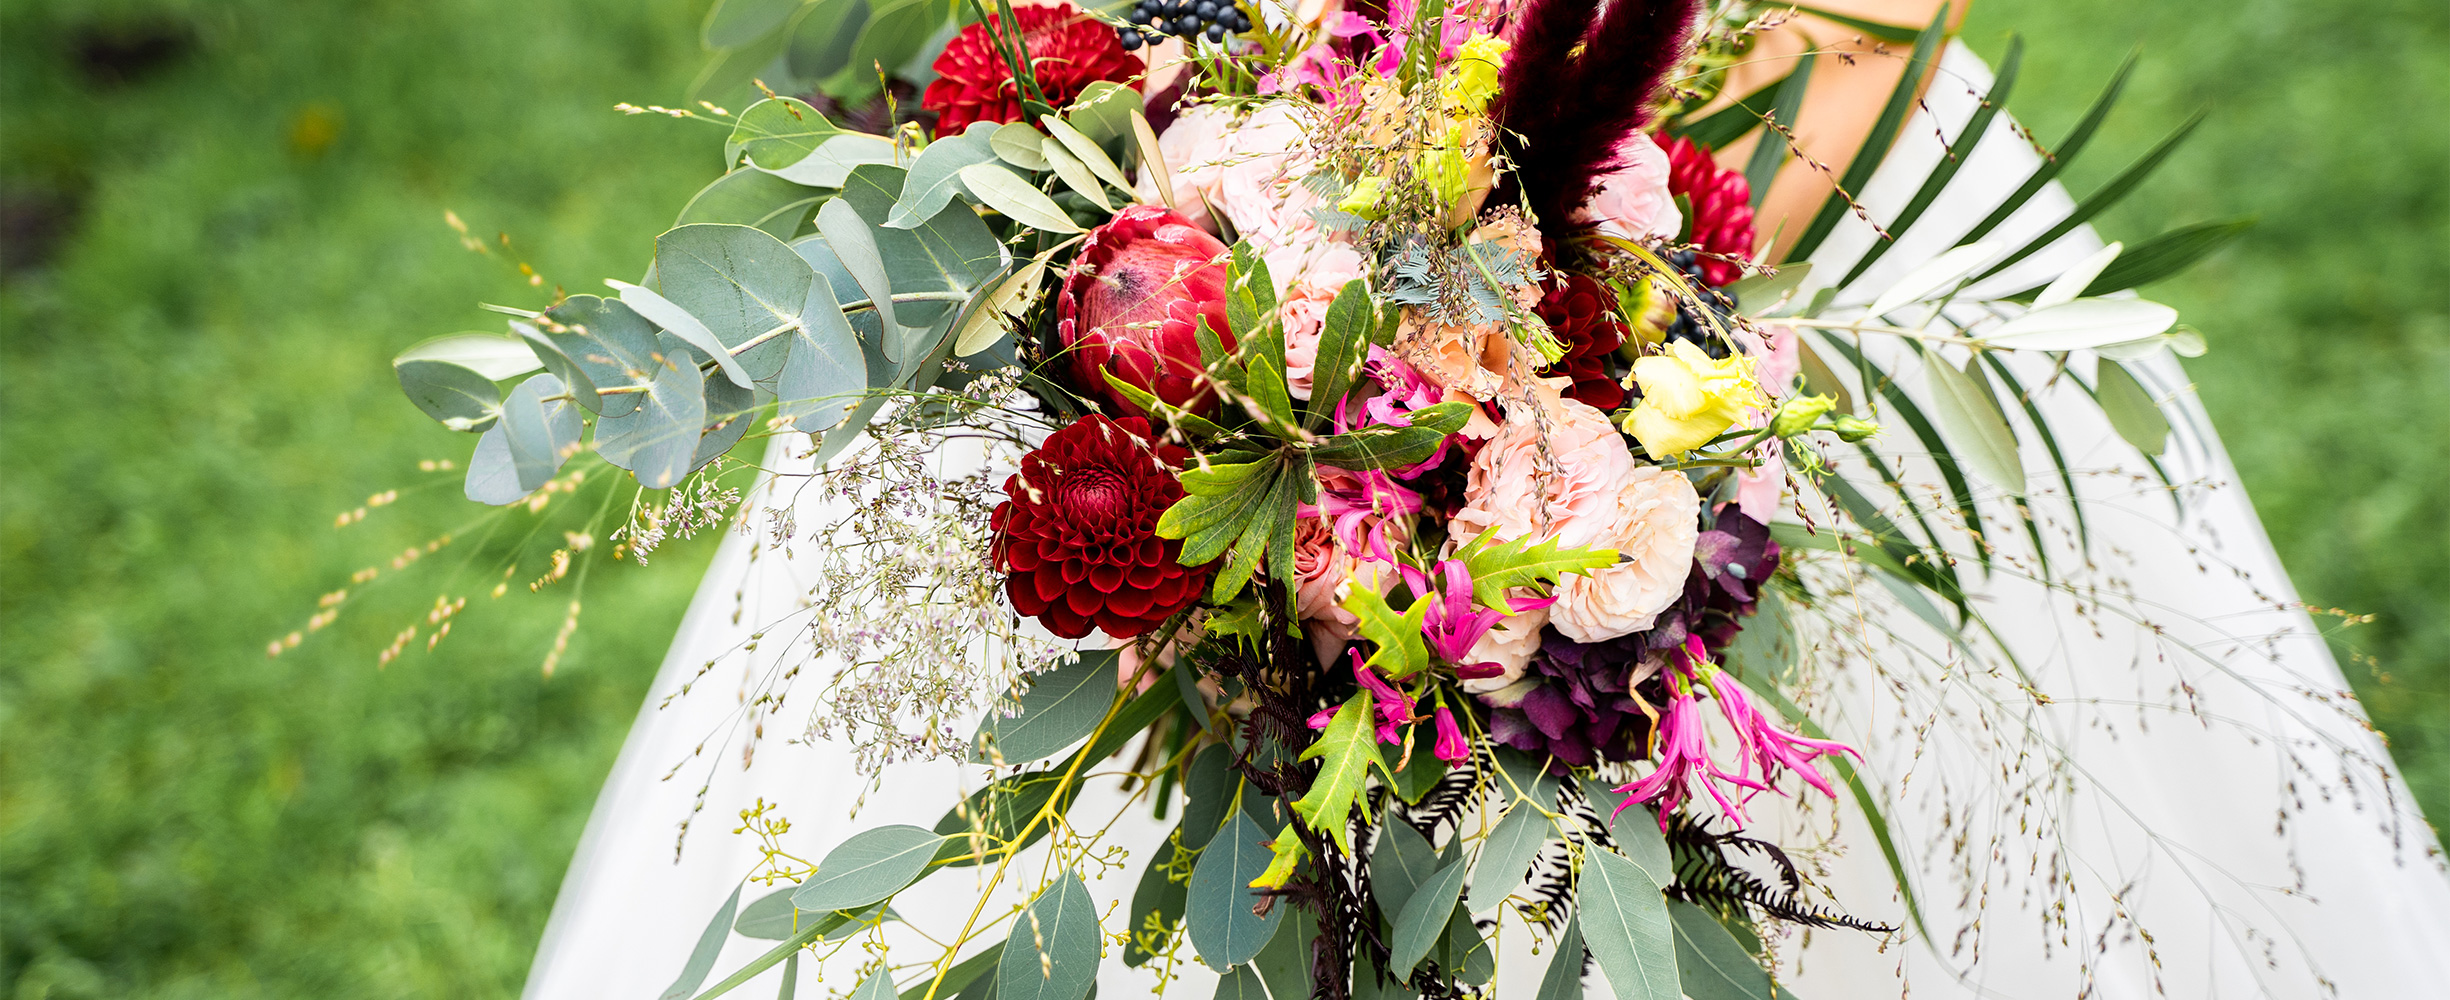 Brautstrauss mit frischen Blumen in rot und pink | Brautstrauss-Manufaktur Bremen